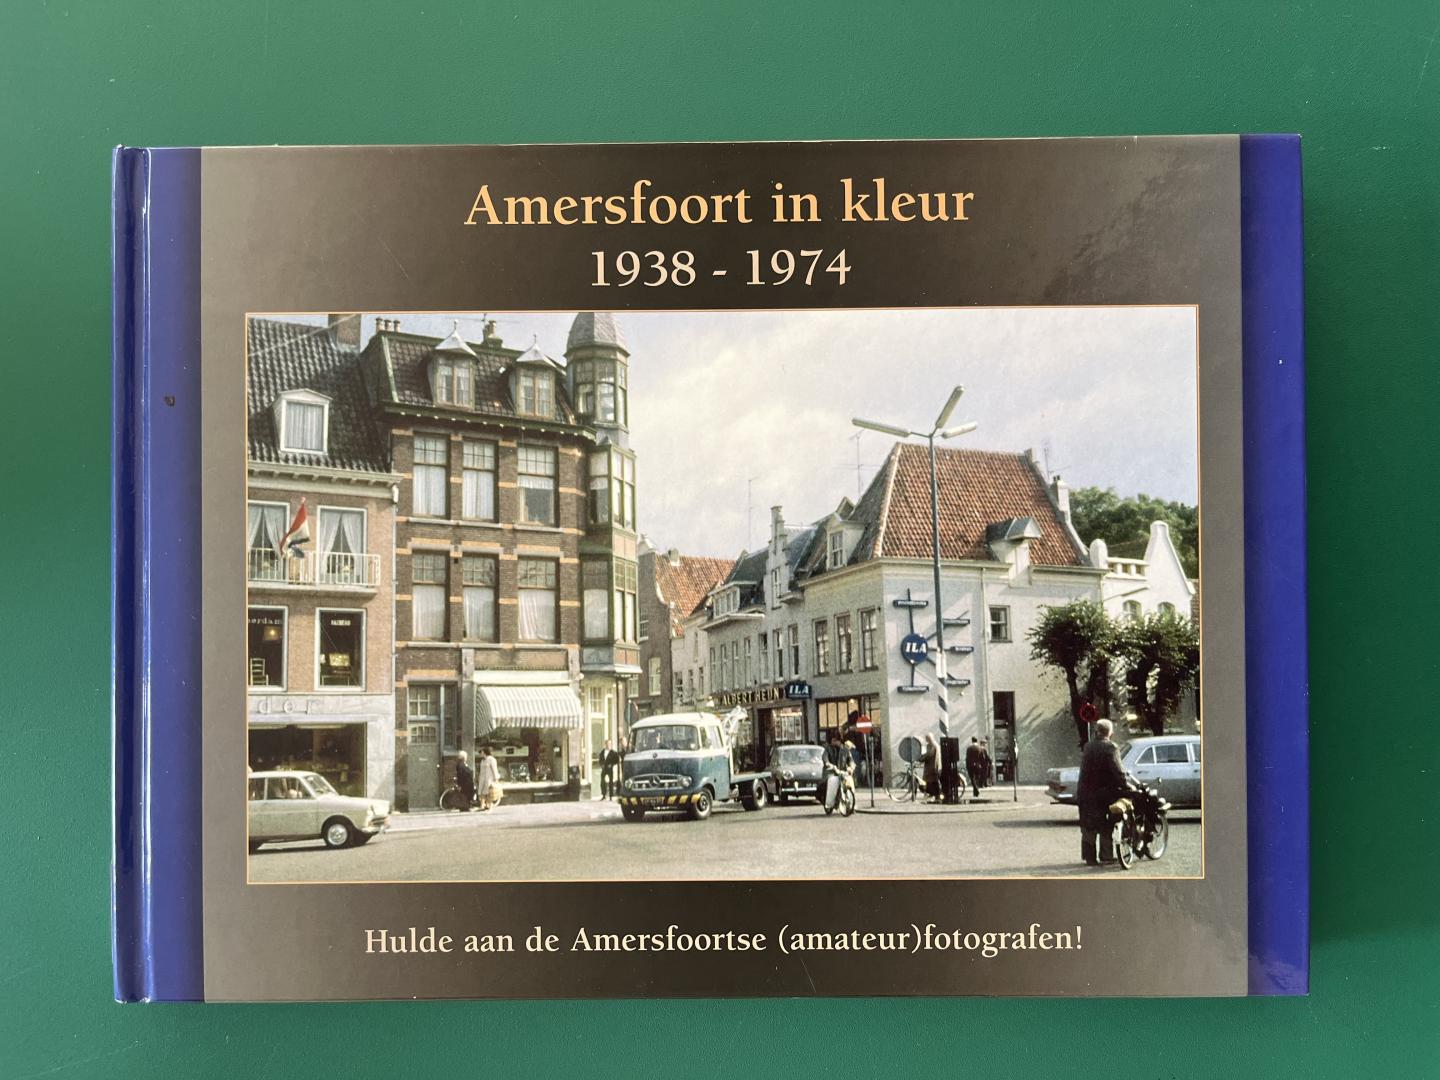 Kessels, Philippe & Peter Leeuwen - Amersfoort in kleur 1938-1974. Hulde aan de Amersfoortse (amateur)fotografen!